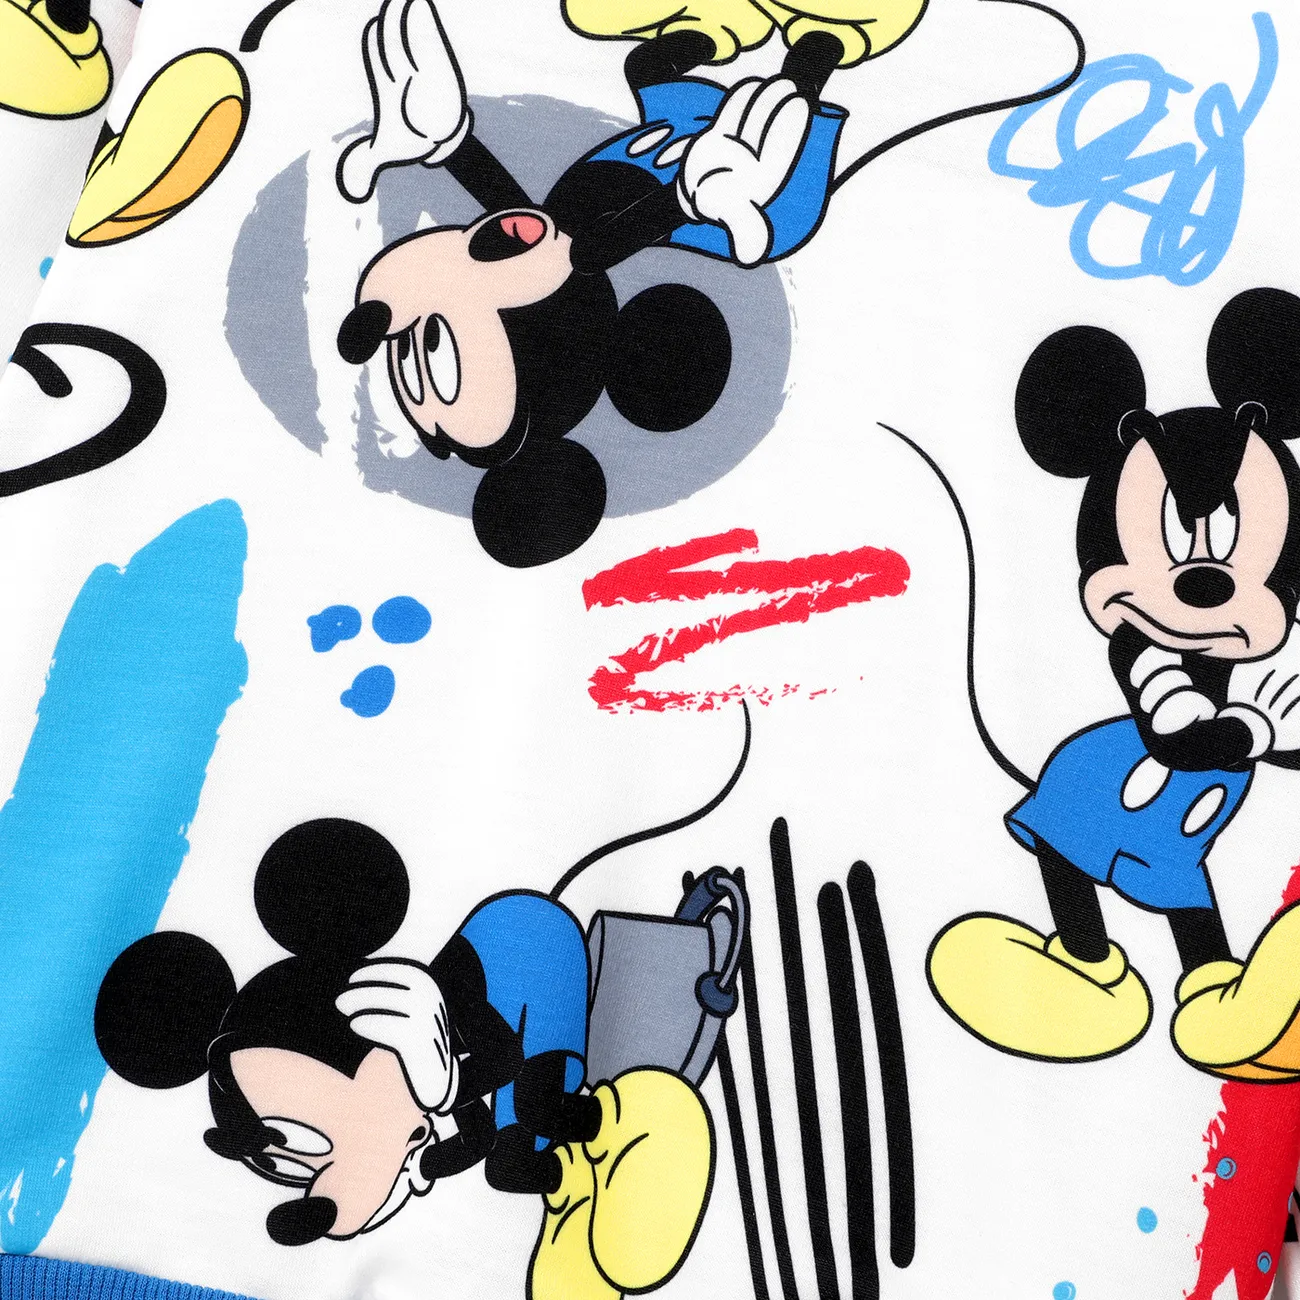 Disney Mickey and Friends 2 unidades Criança Menino Com capuz Infantil conjuntos de moletom Branco big image 1